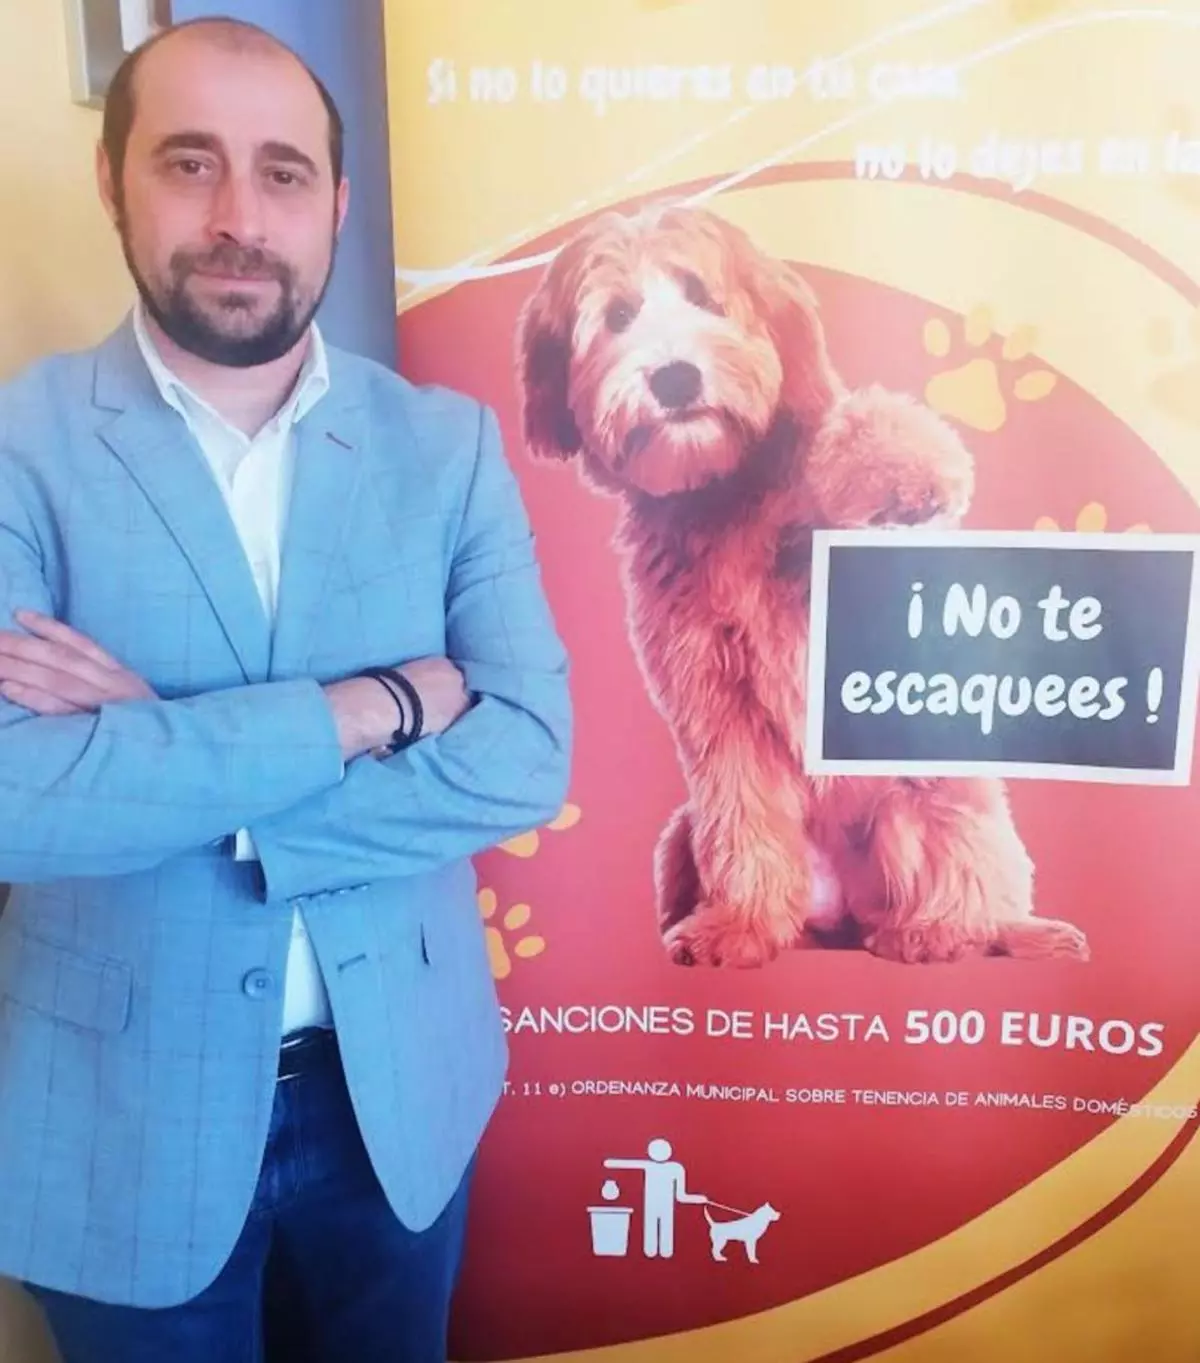 "No te escaquees", la campaña de Llanera contra los excrementos de perro